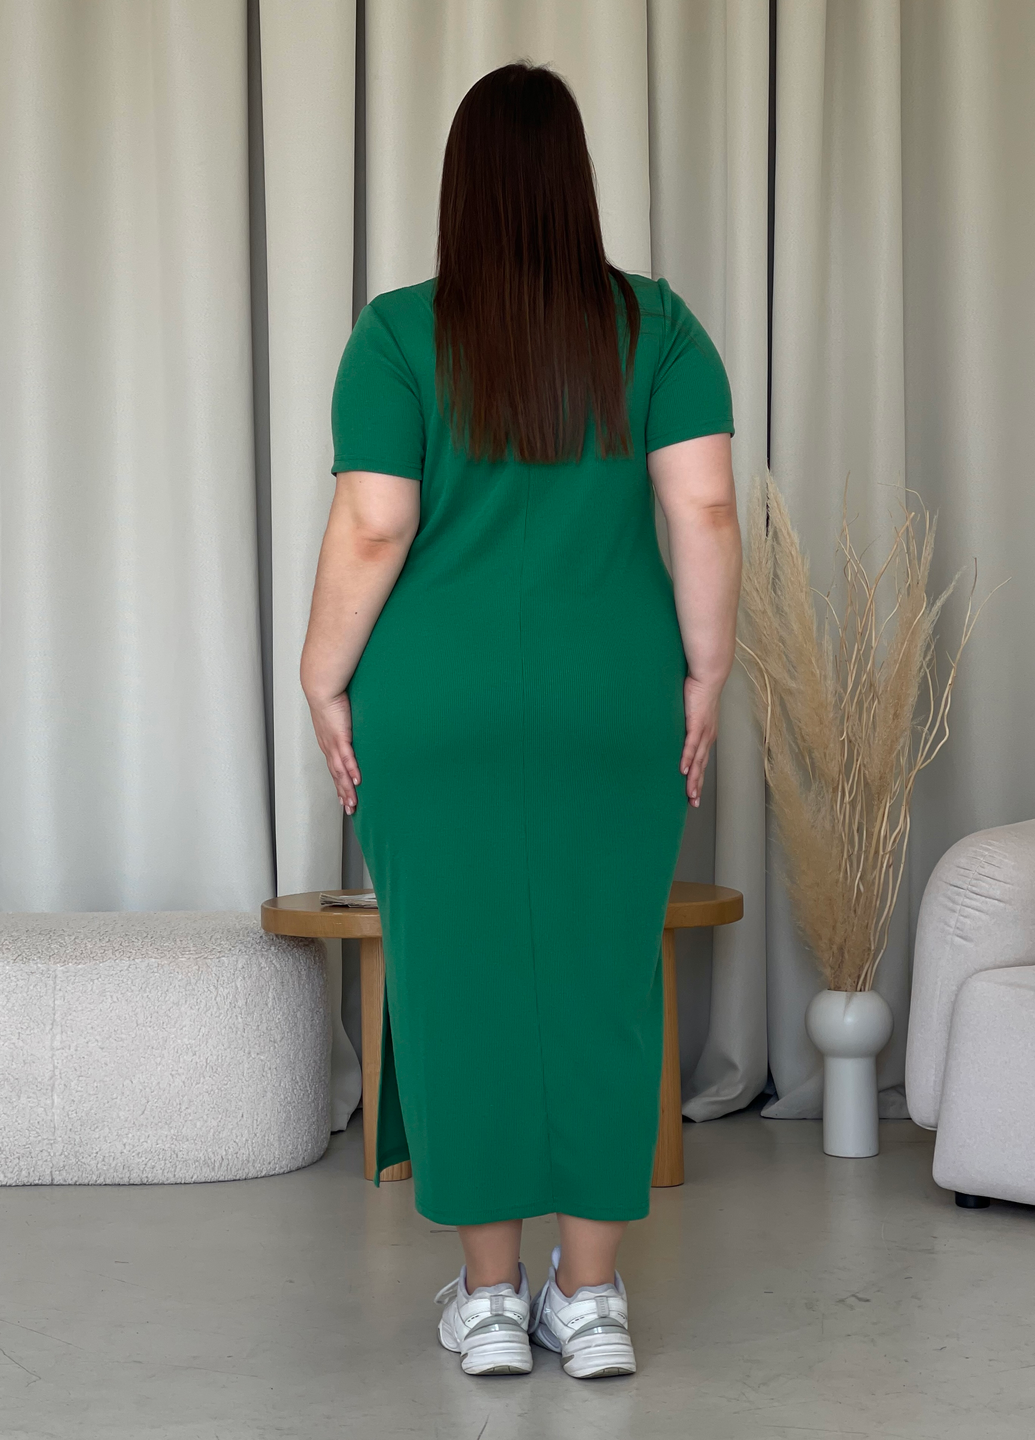 Купить Длинное платье-футболка в рубчик зеленое Merlini Кассо 700000129 размер 42-44 (S-M) в интернет-магазине